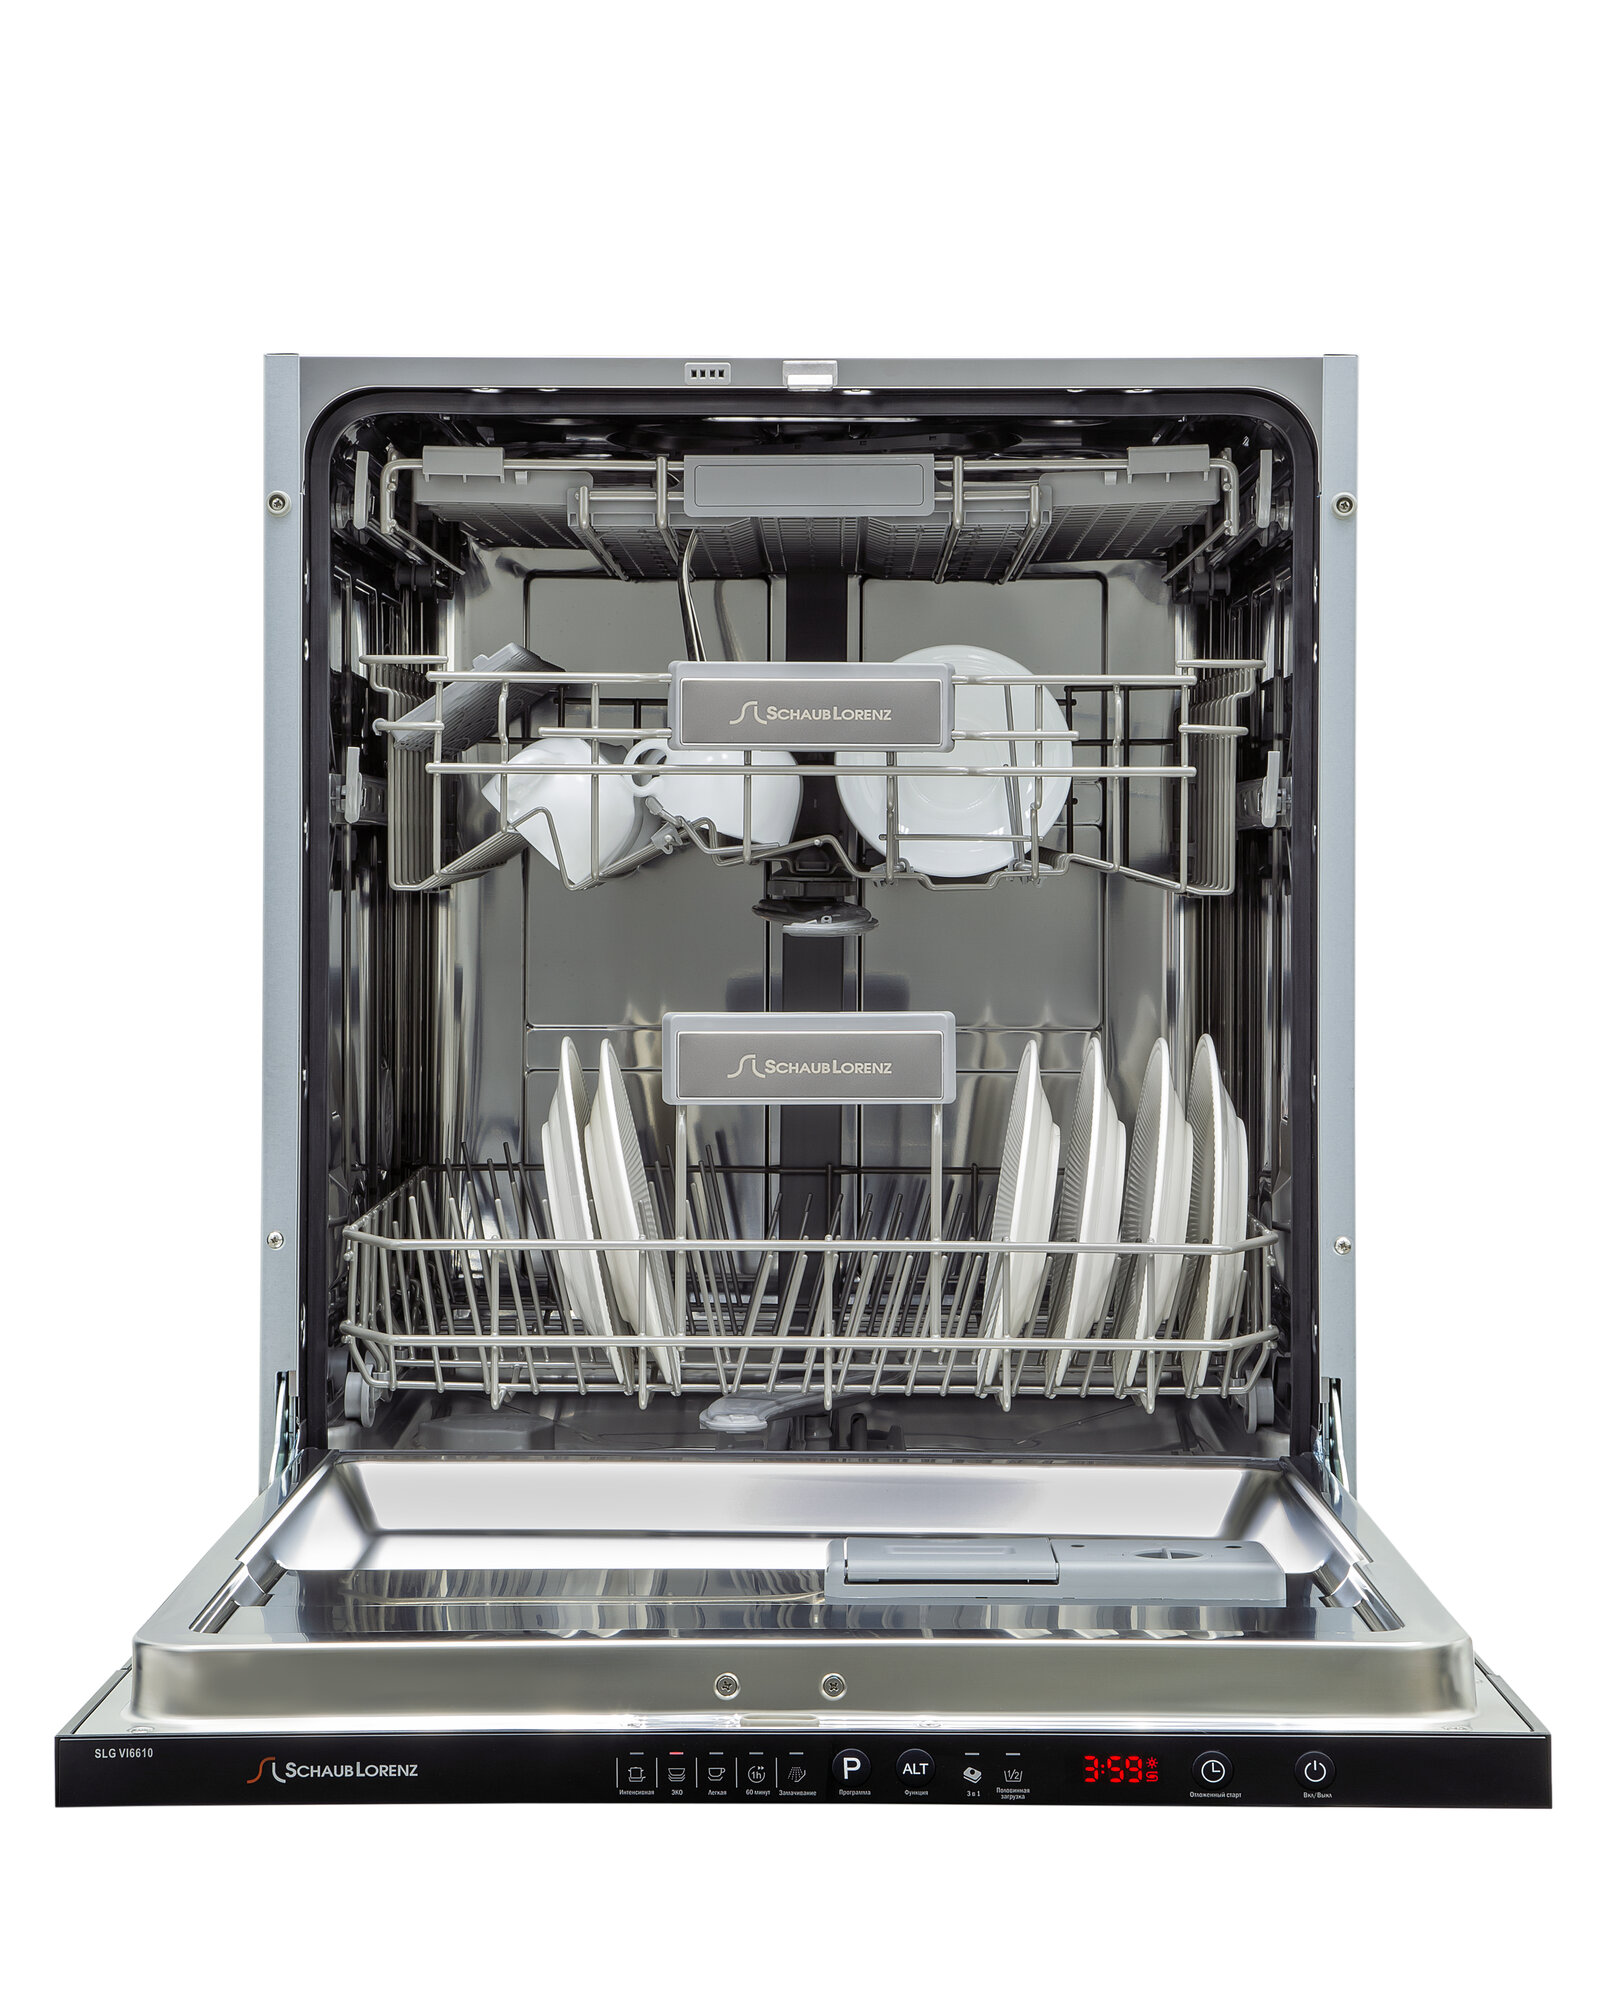 Посудомоечная машина встраиваемая Schaub Lorenz SLG VI6610, 60см, турбосушка, 3 корзина, луч на полу, защита от протечек аквастоп